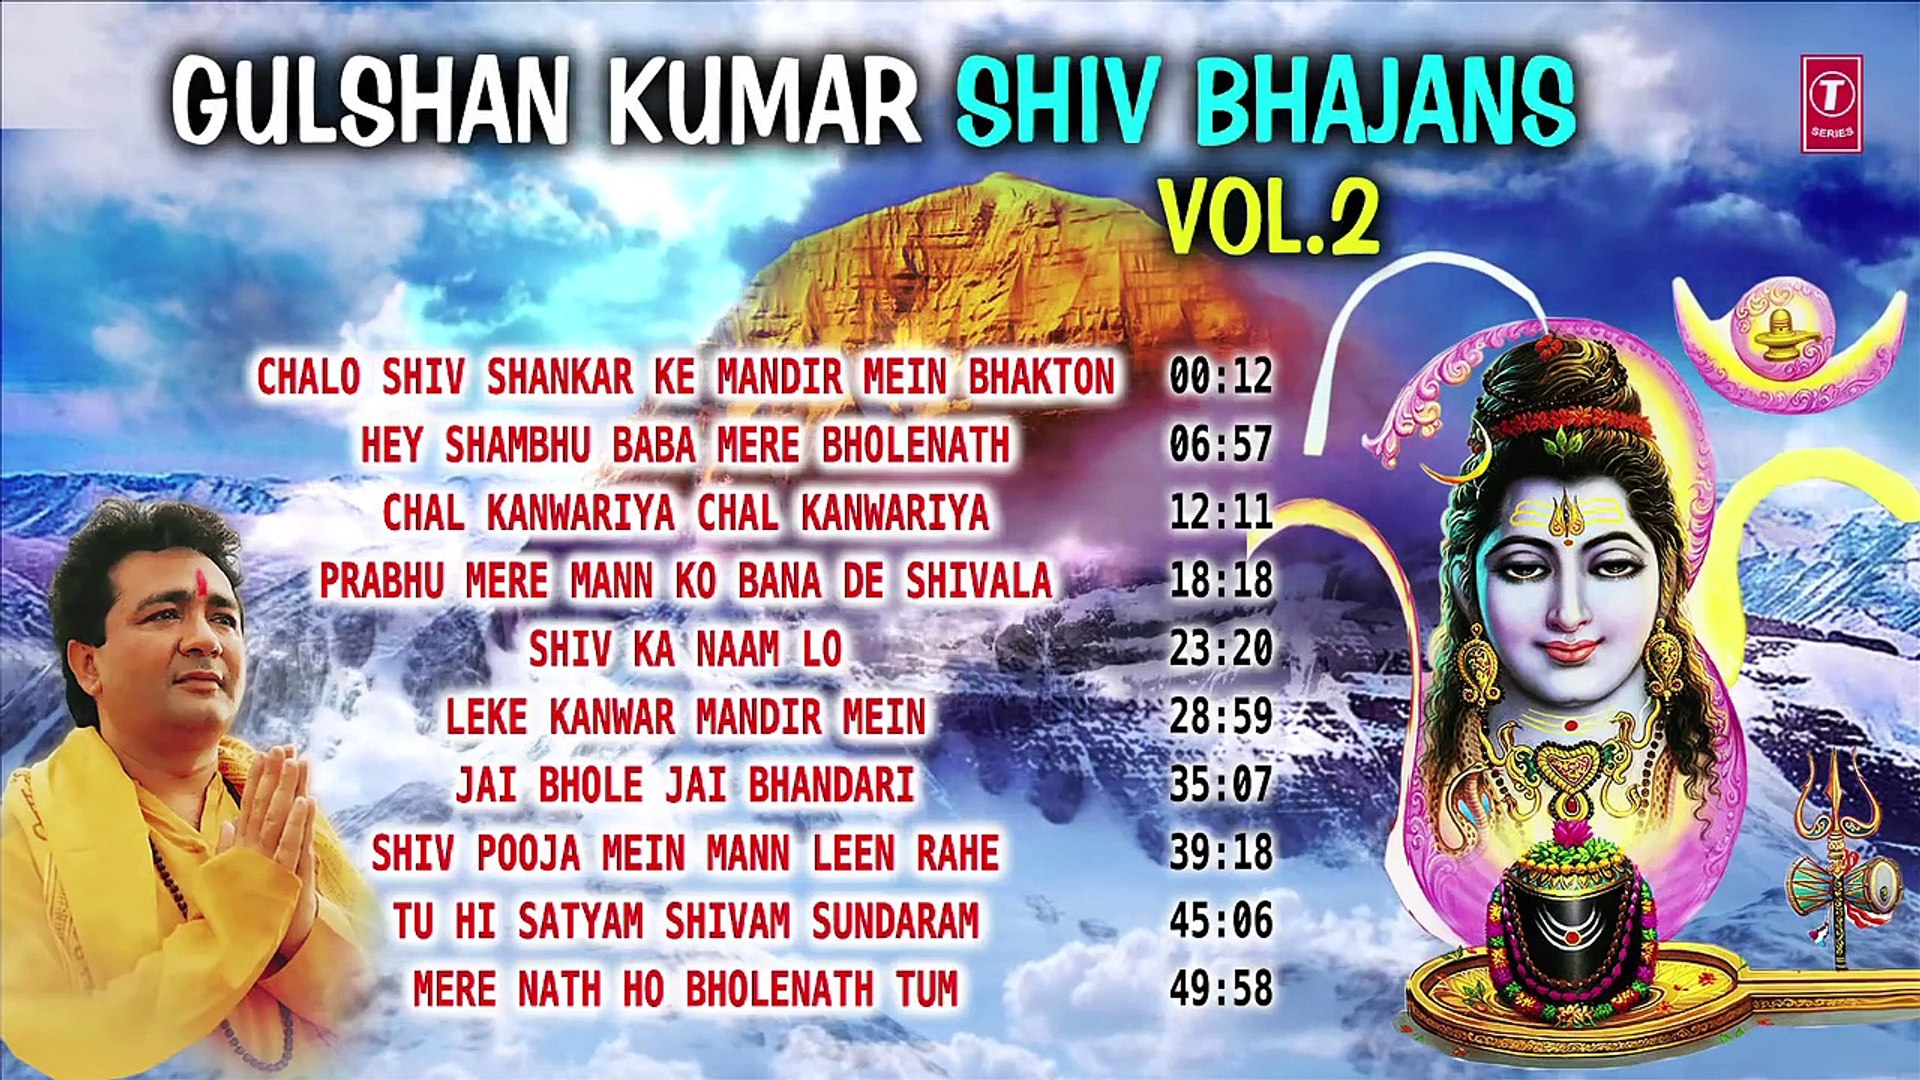 Gulshan kumar shiv bhajans top 10 best shiv bhajans by gulshan kumar mp3 songs